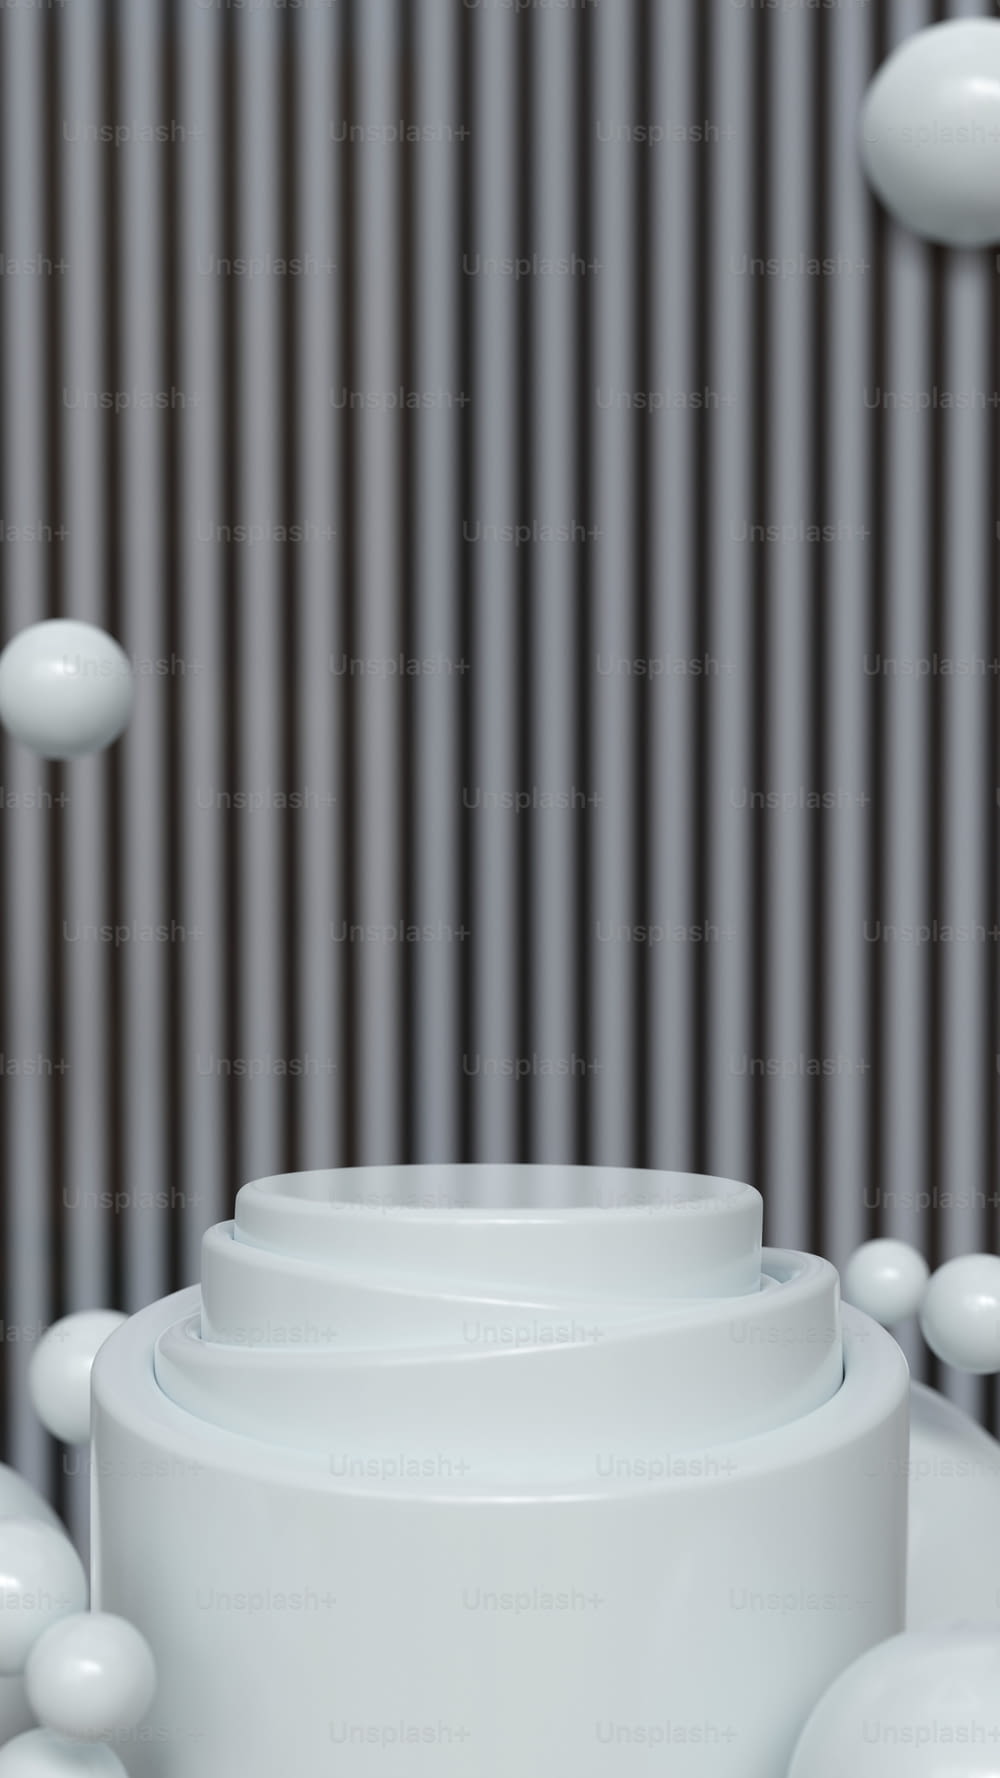 Una pila de platos blancos sentados encima de una mesa